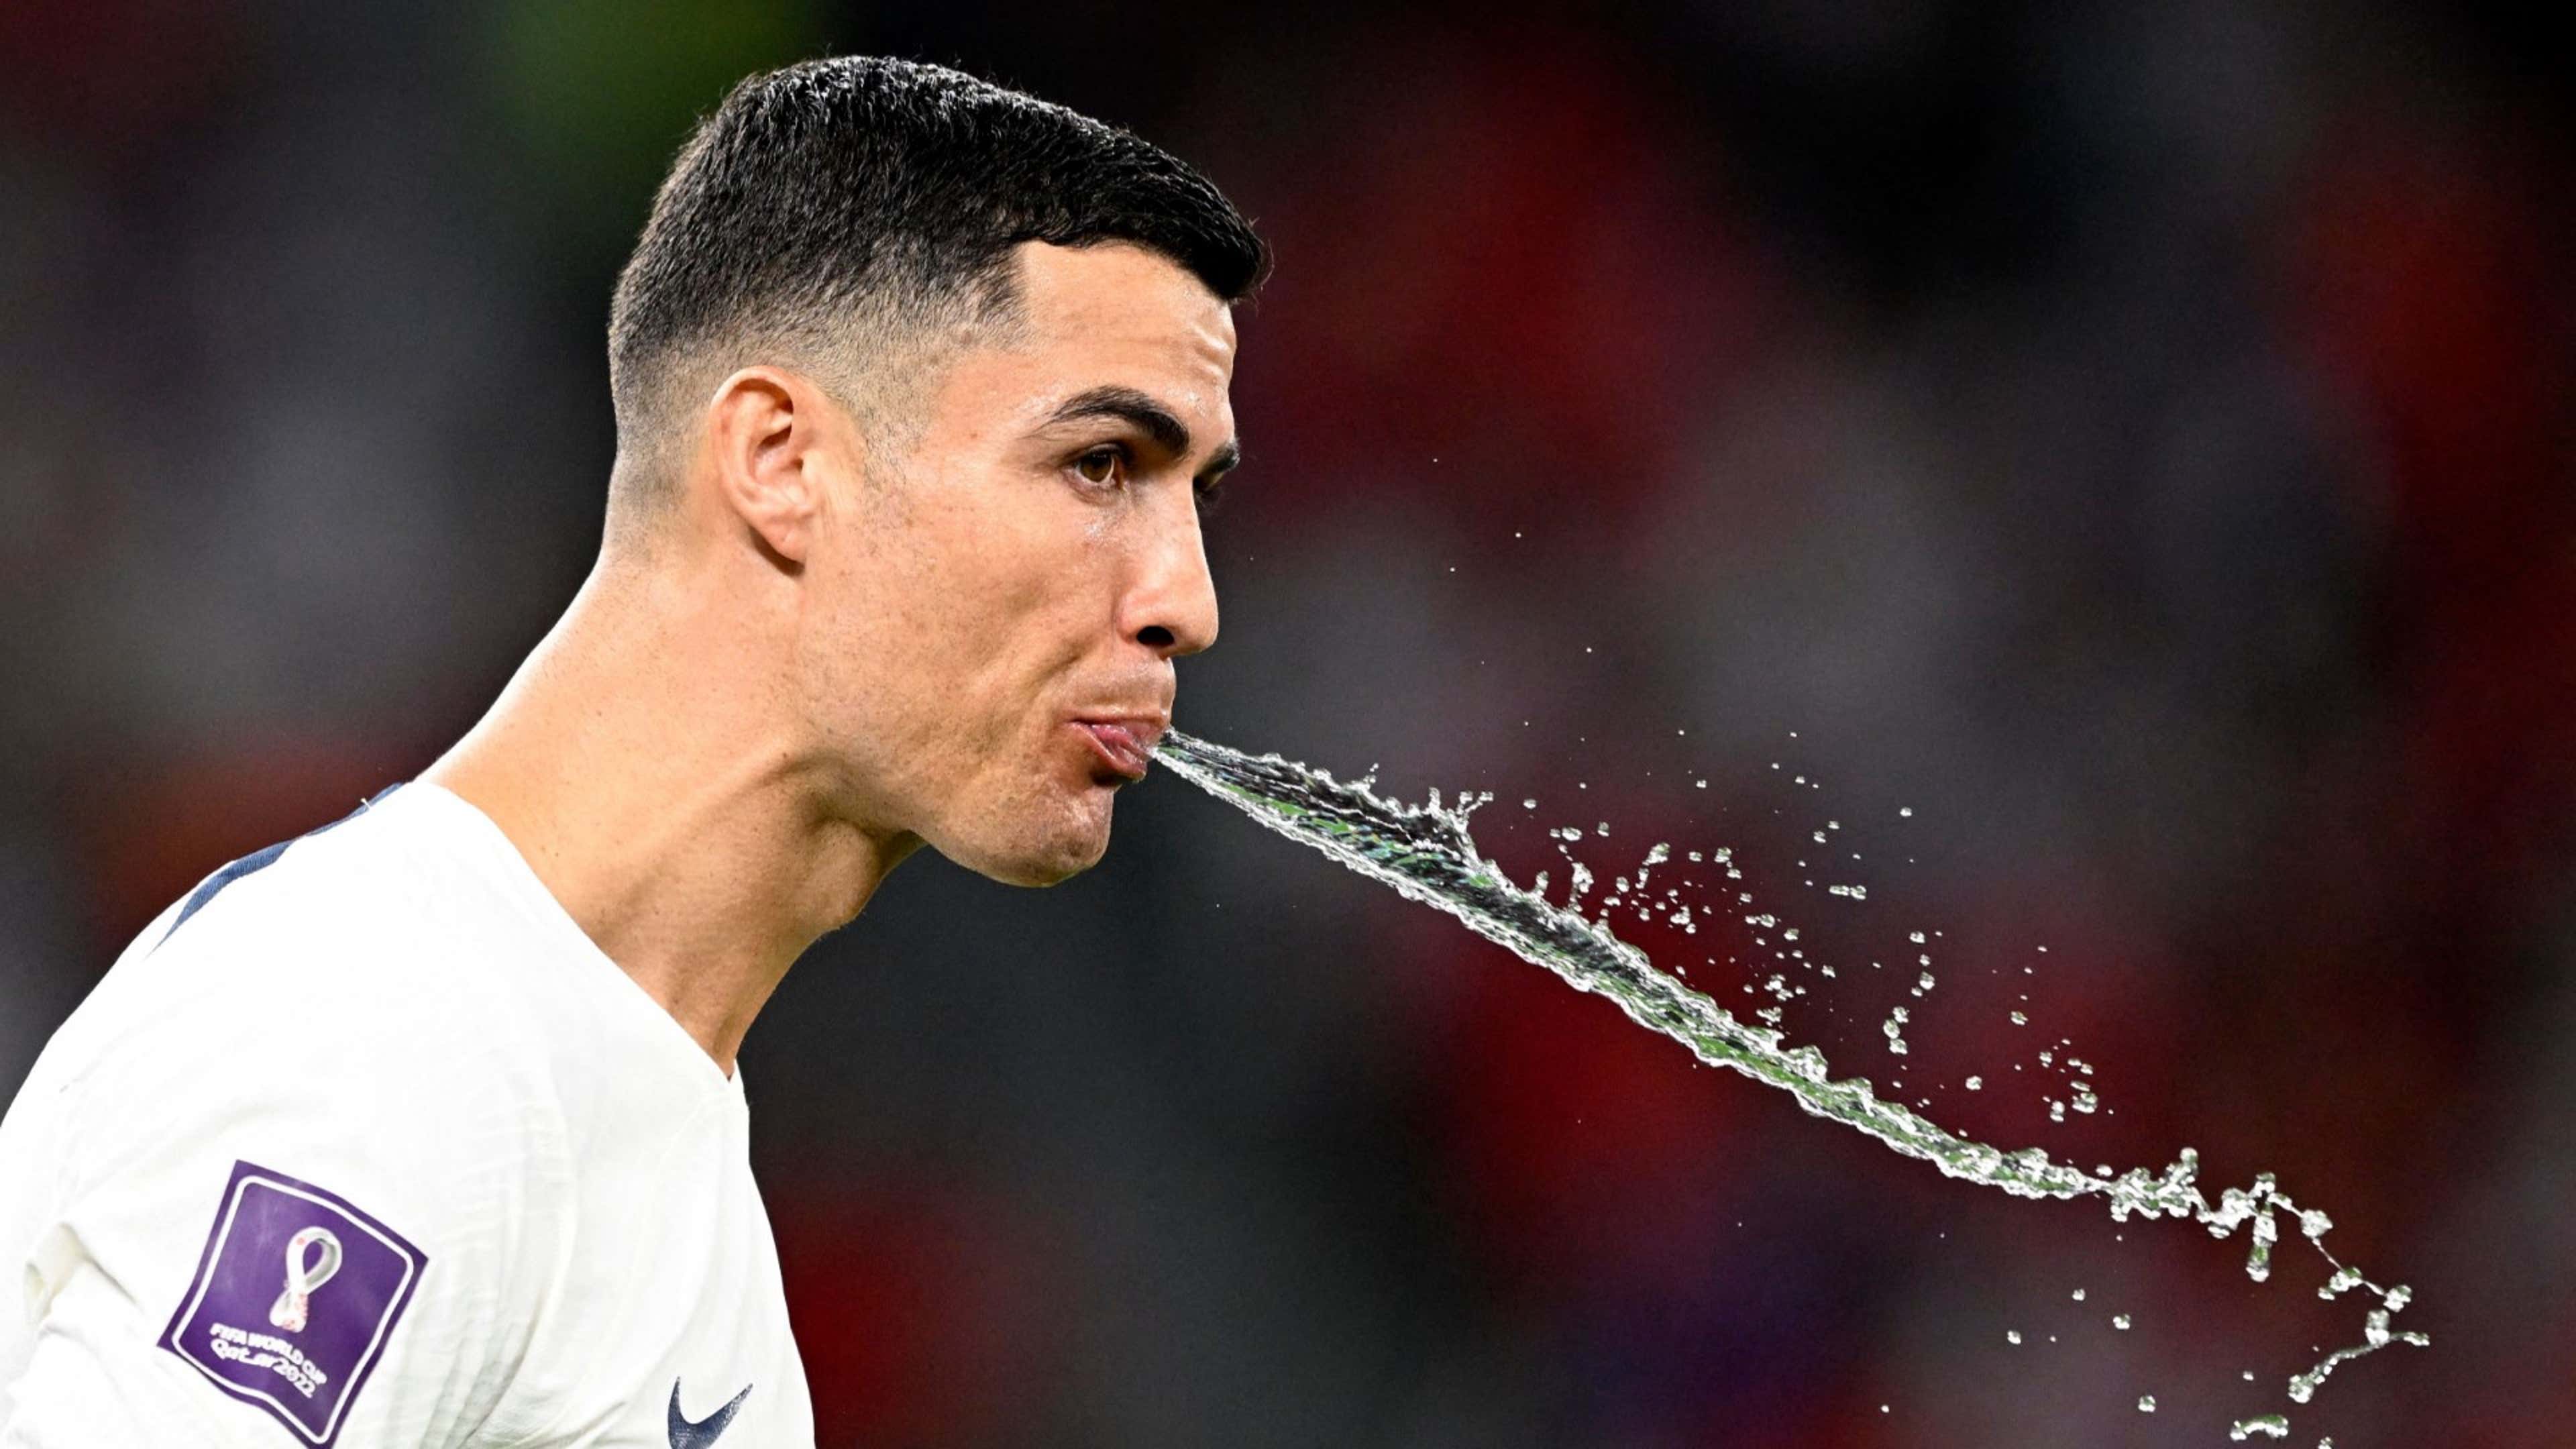 Cristiano Ronaldo spitting water